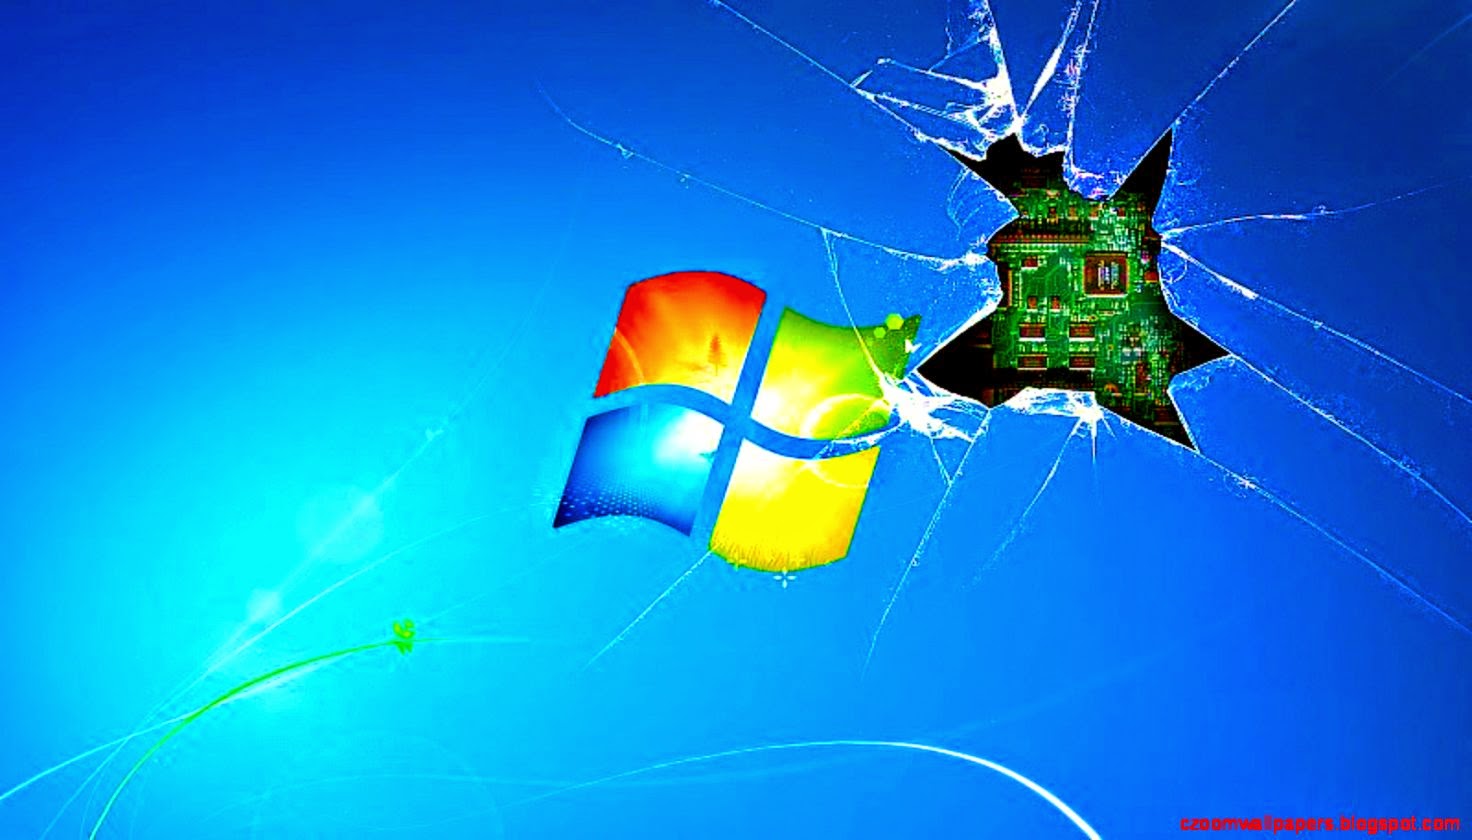 Windows 7 Broken Screen Wallpapers - Windows 7 Broken Screen Wallpaper Hd , HD Wallpaper & Backgrounds